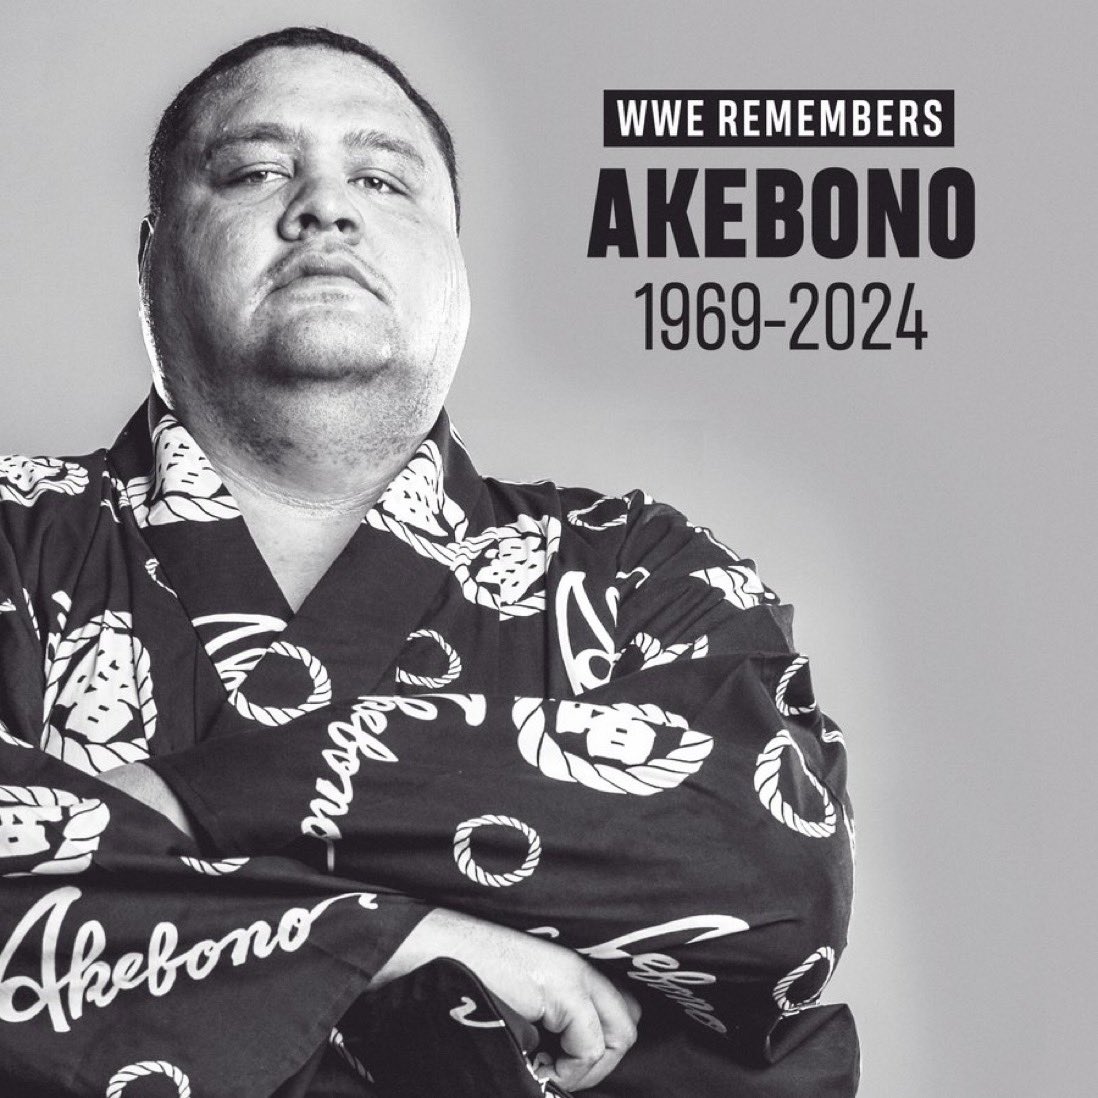 WWE France est attristé d’apprendre le décès d’Akebono. Toutes nos condoléances à sa famille, amis et fans.